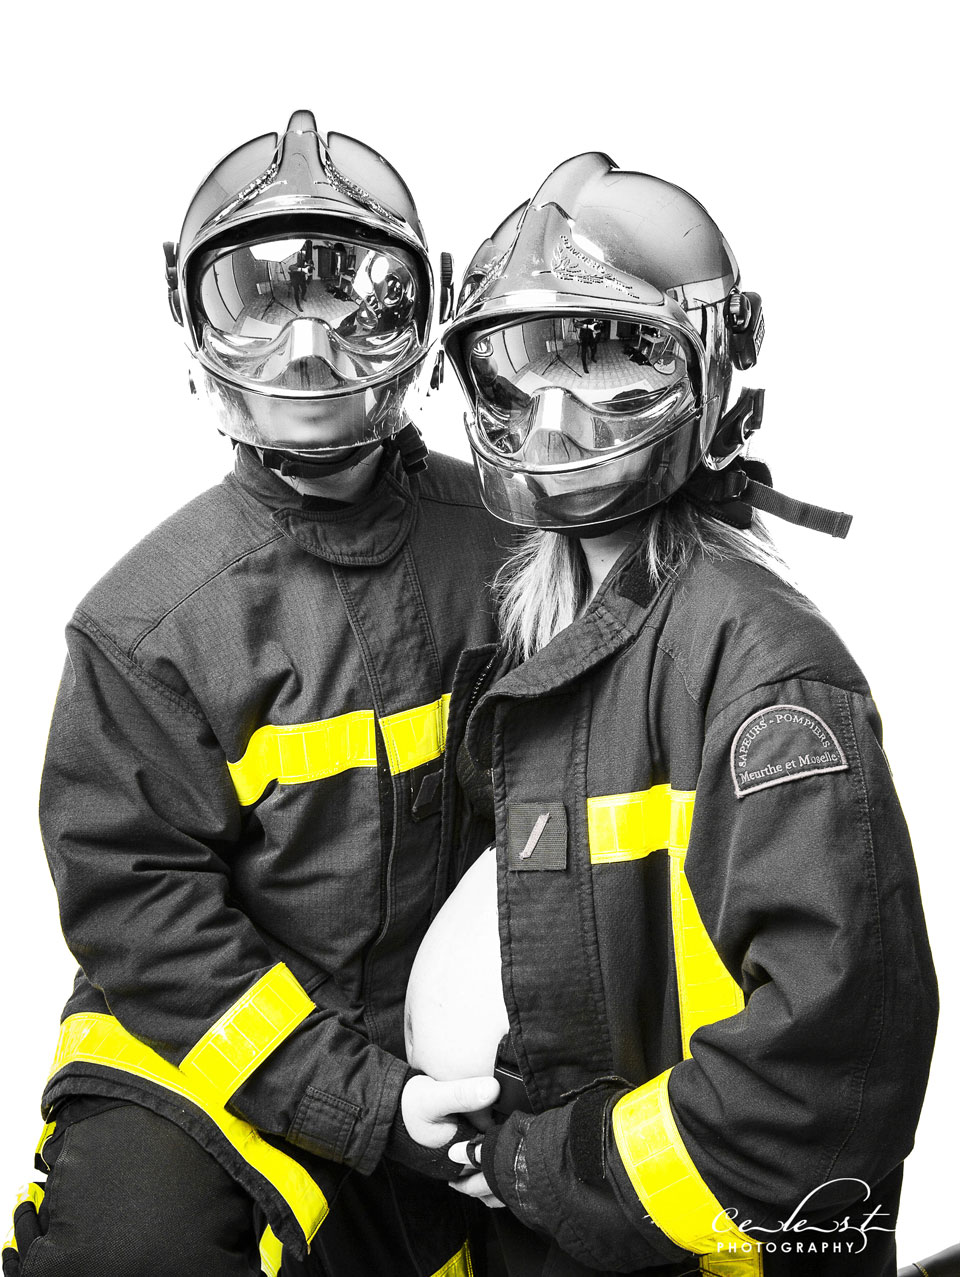 couple de pompiers vêtus de leurs casques visières fermés et vestent laissent apparaitre le ventre d'une femme enceinte